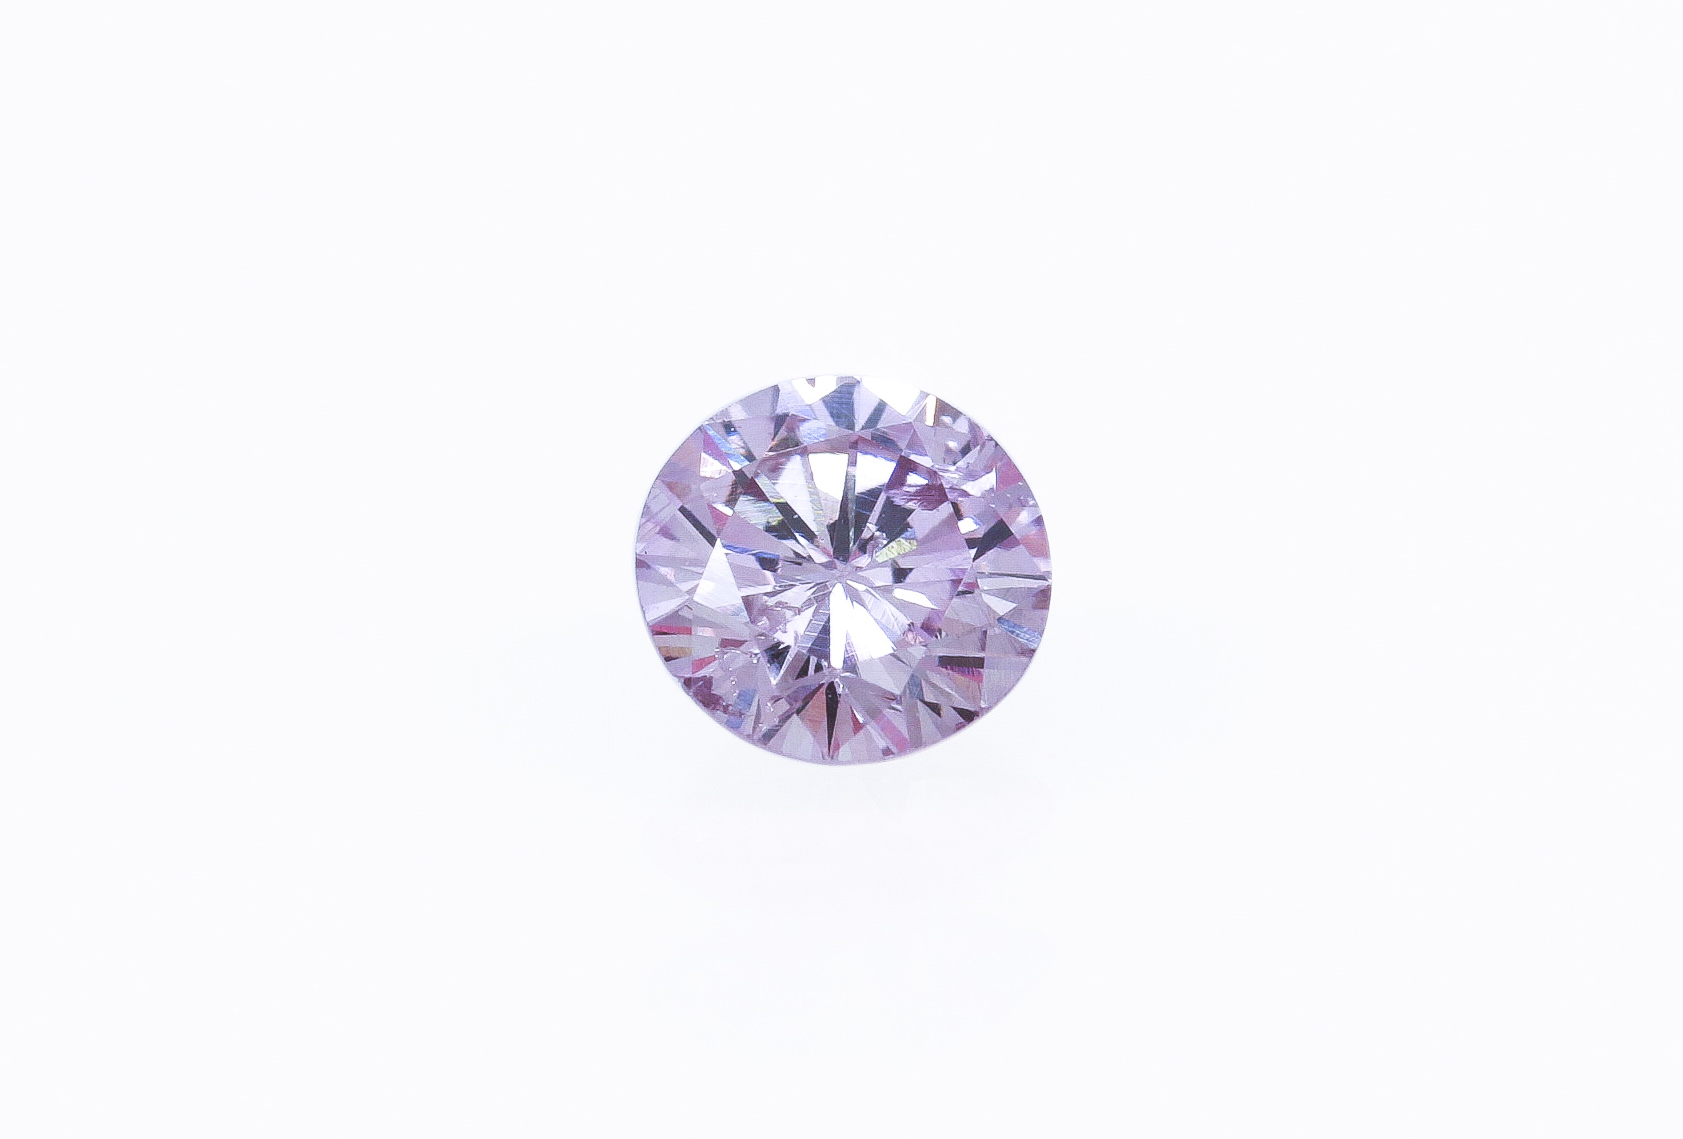 世界中から厳選したピンクダイヤモンド|ジュエリーハナジマ